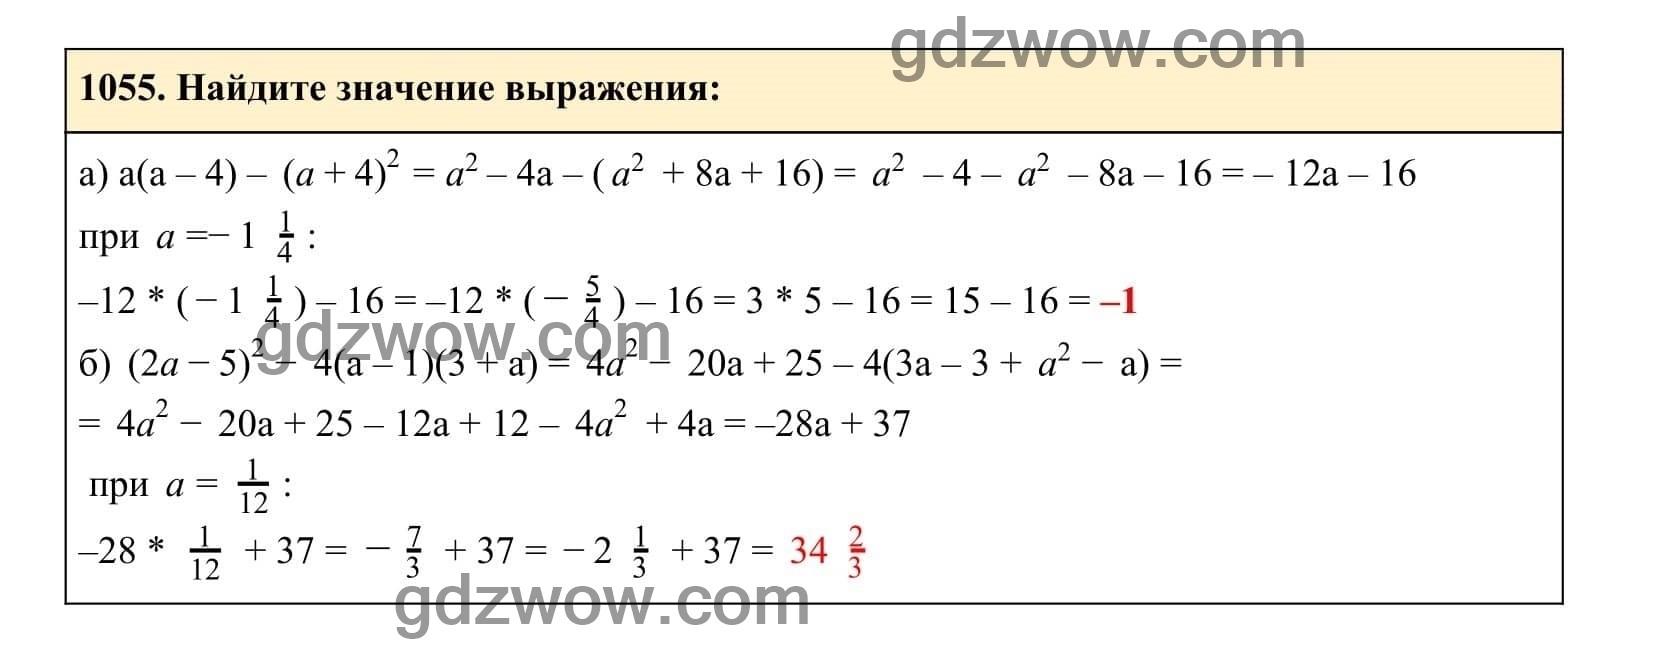 Упражнение 1055 - ГДЗ по Алгебре 7 класс Учебник Макарычев (решебник) - GDZwow